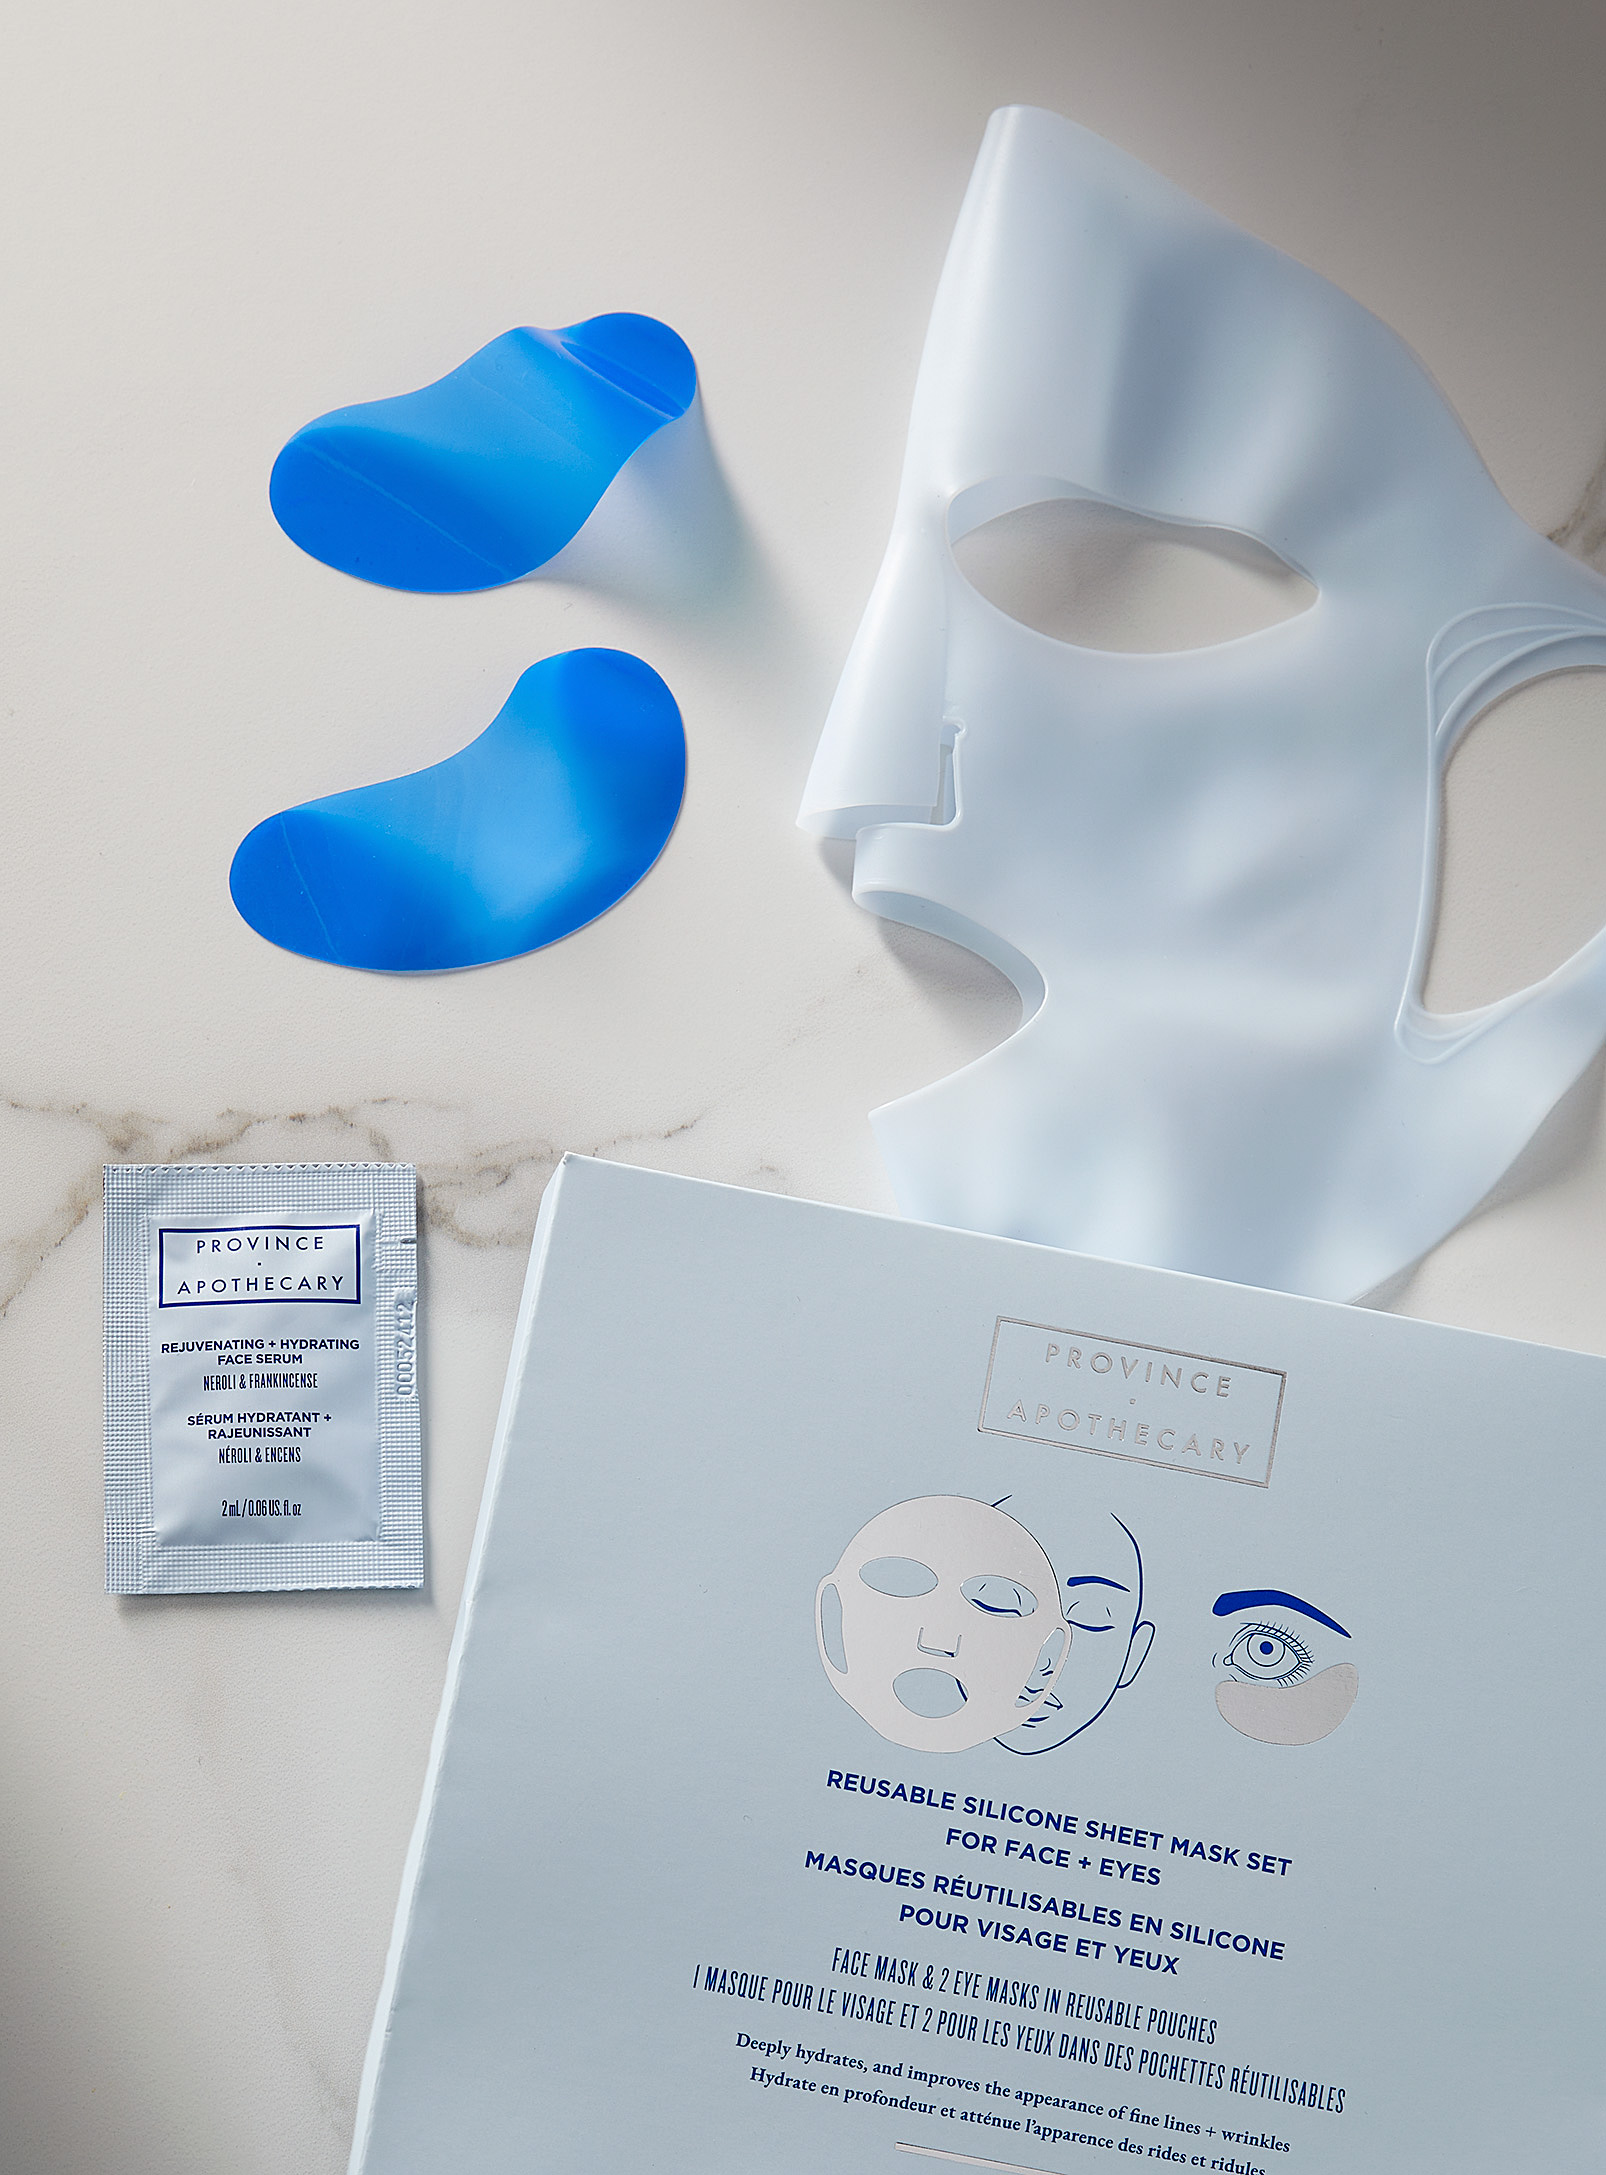 Province Apothecary - L'ensemble de masques en silicone réutilisables Visage et yeux